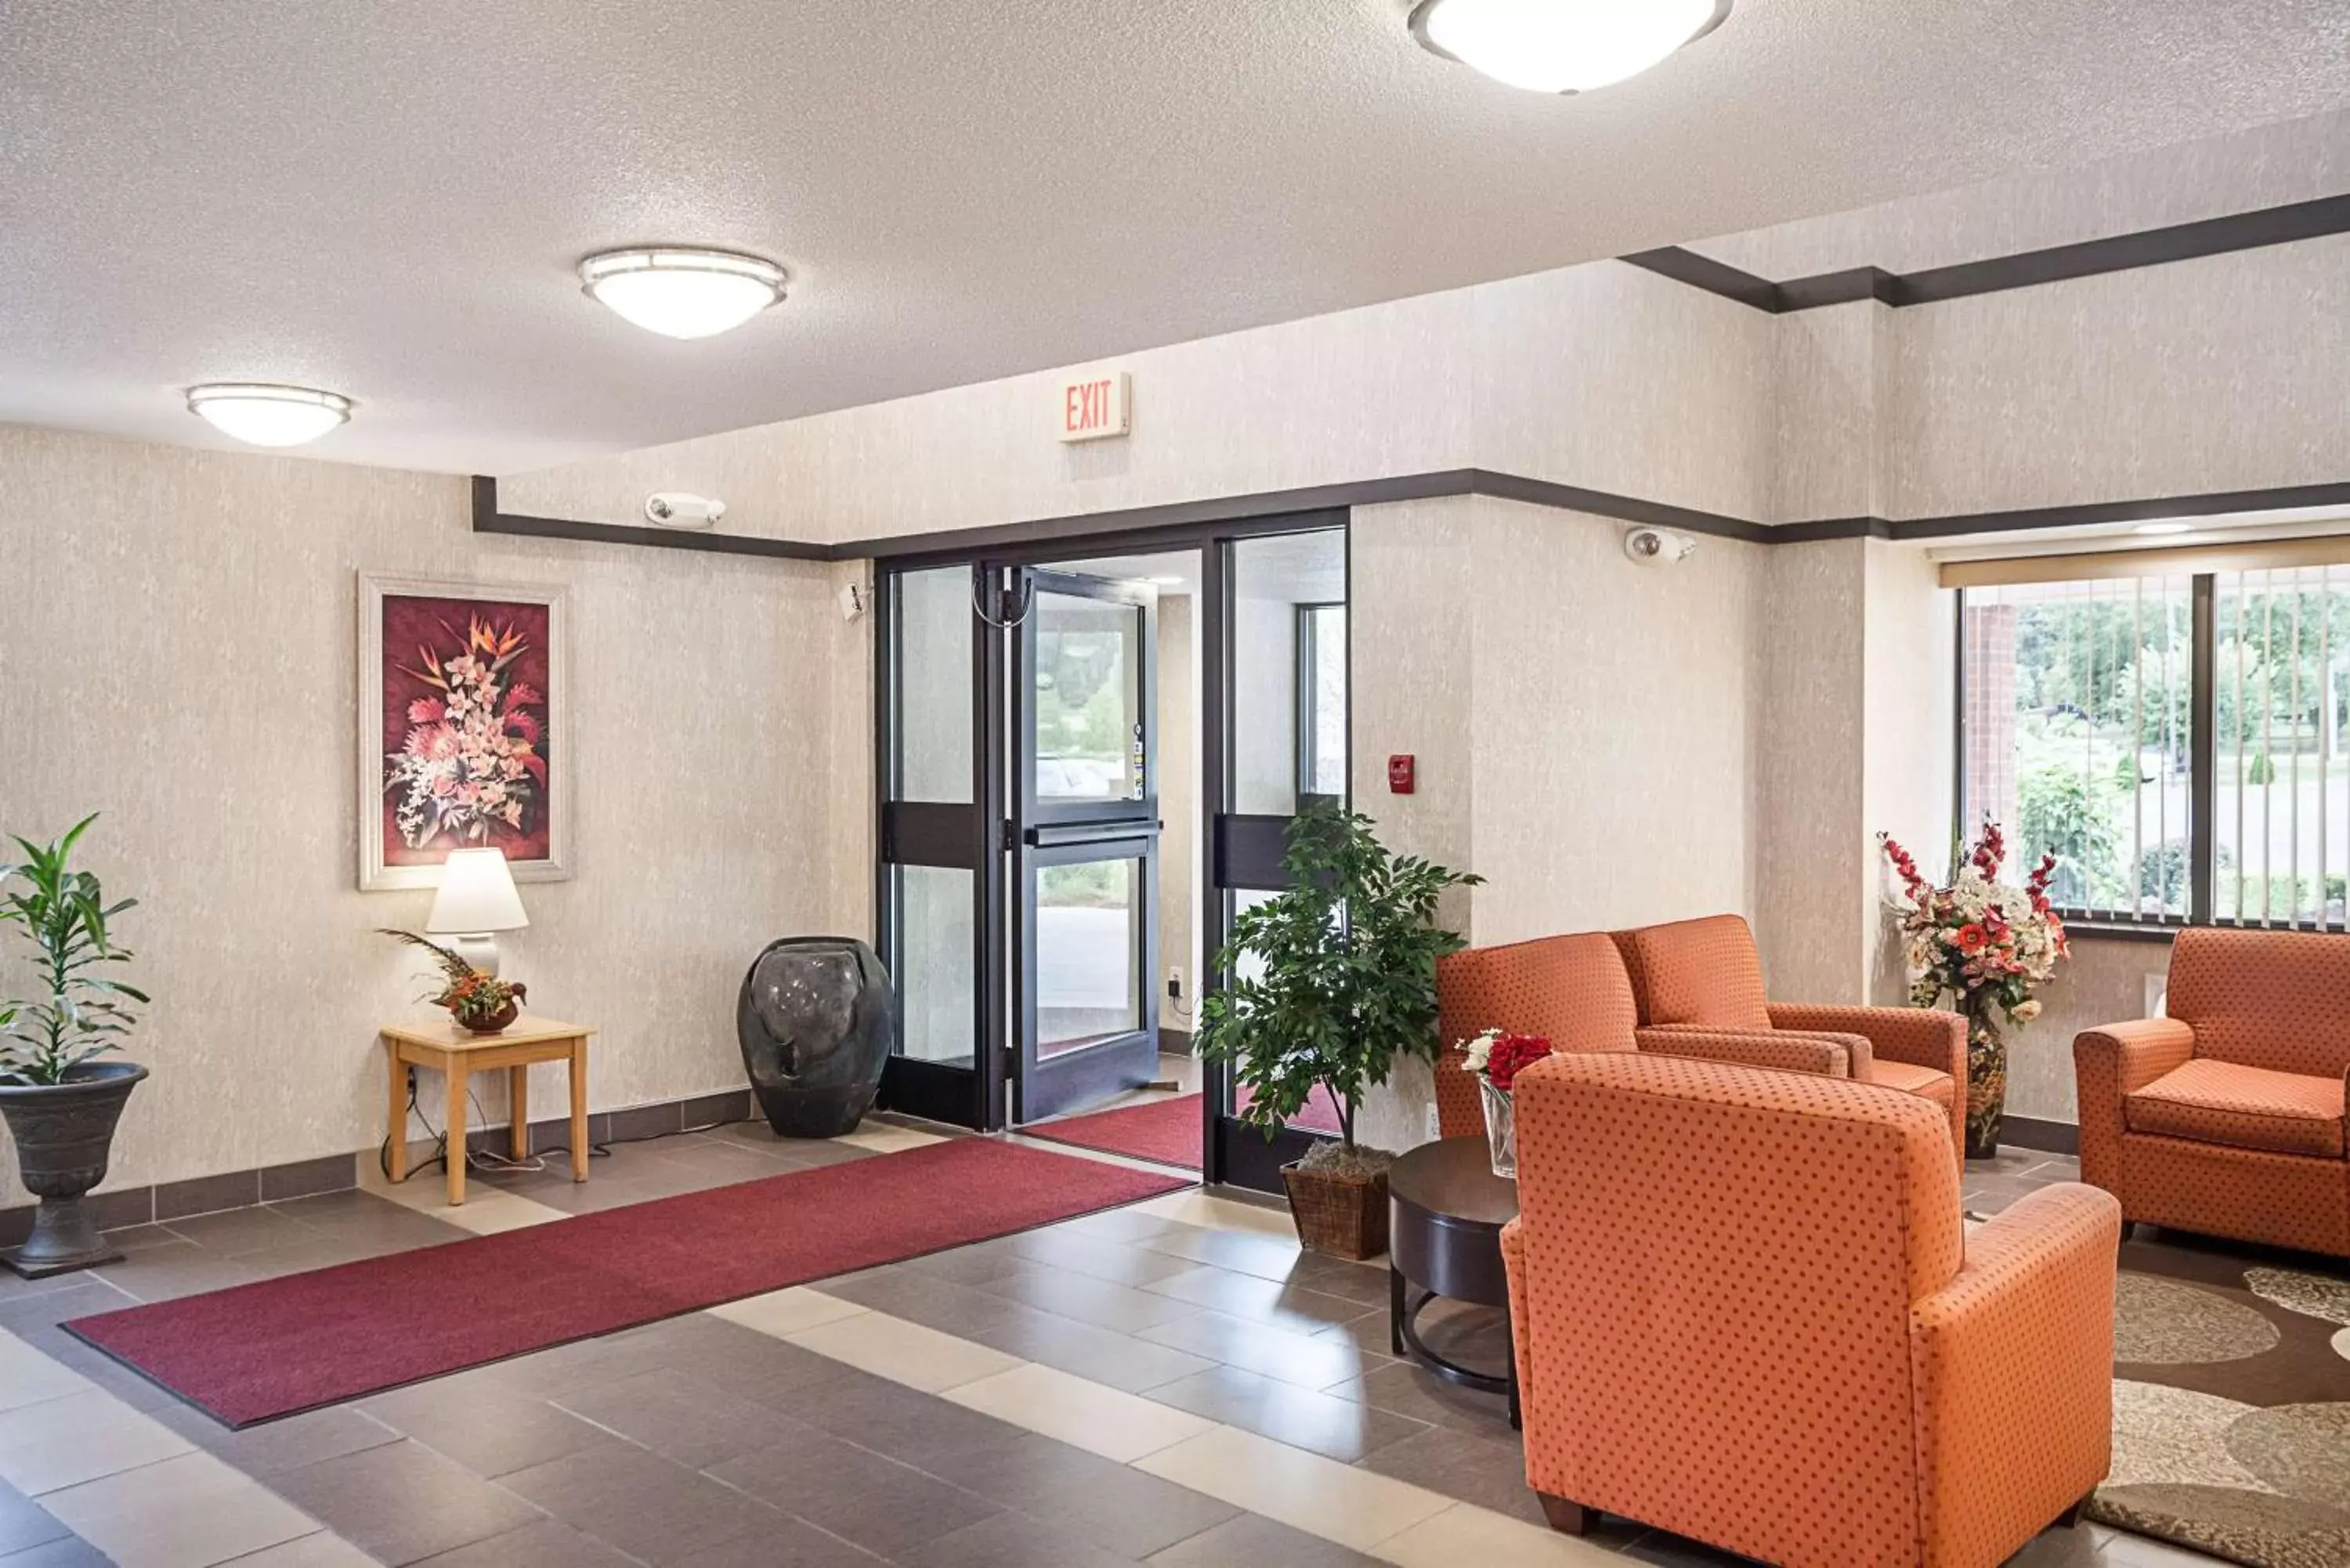 Lobby or reception, Lobby/Reception in Motel 6-Binghamton, NY